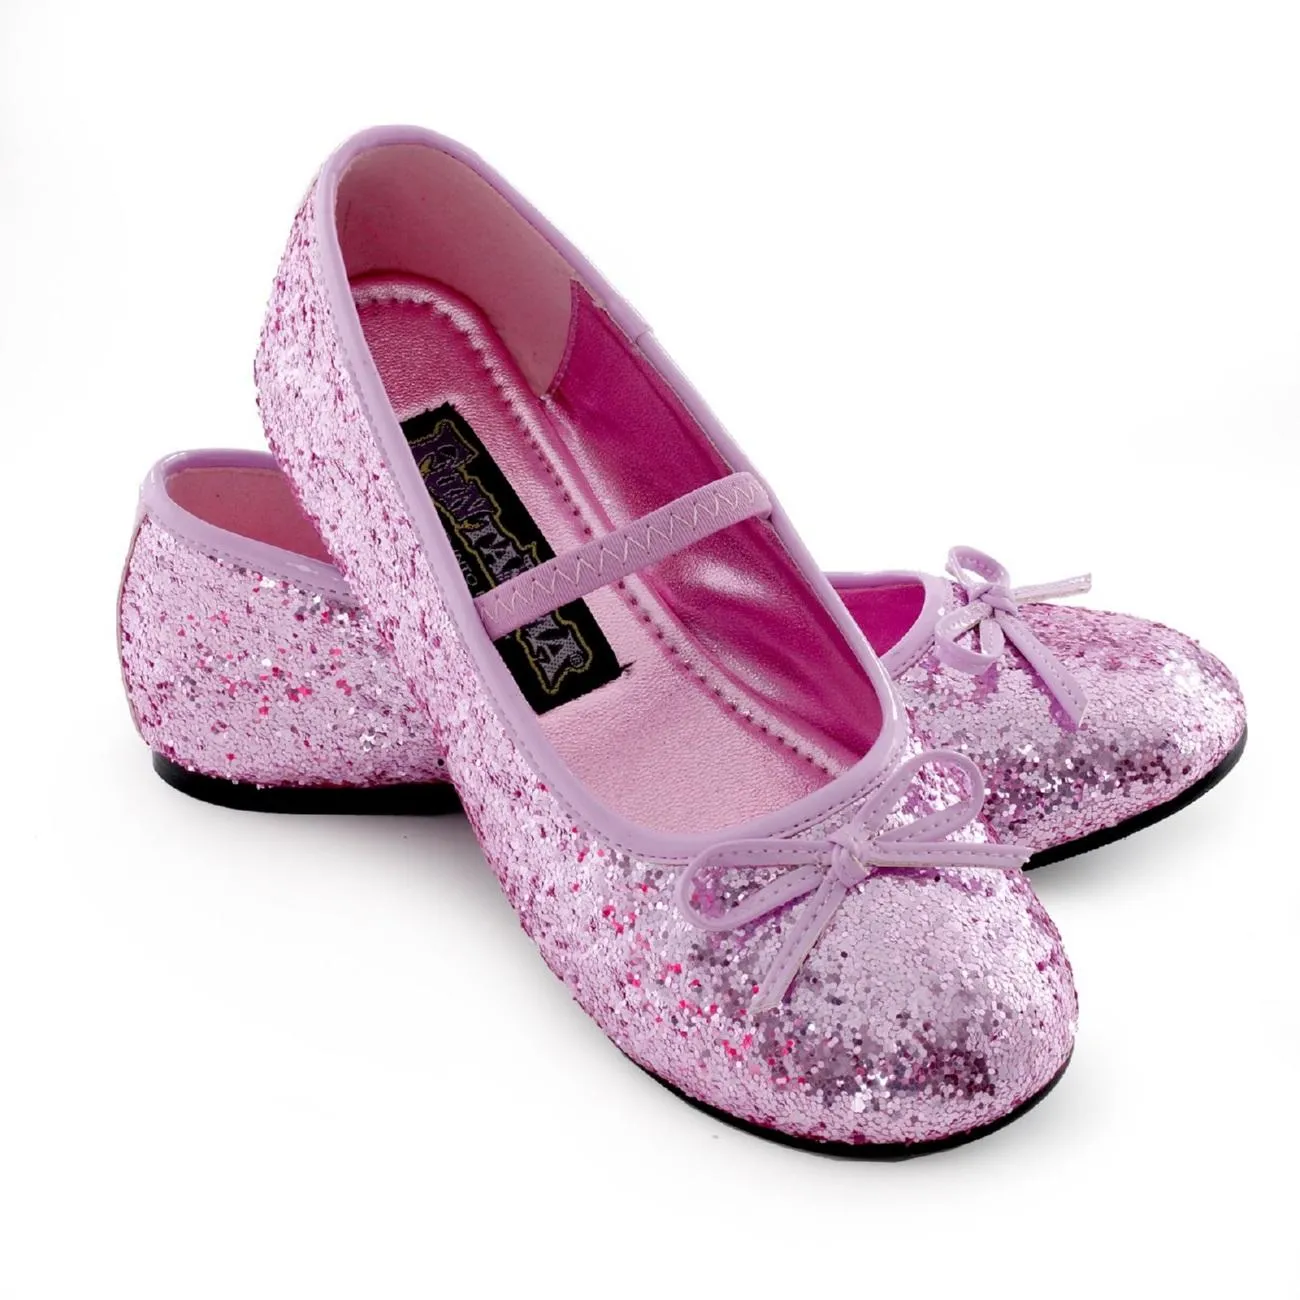 Fotos de zapatos para niñas - Paperblog